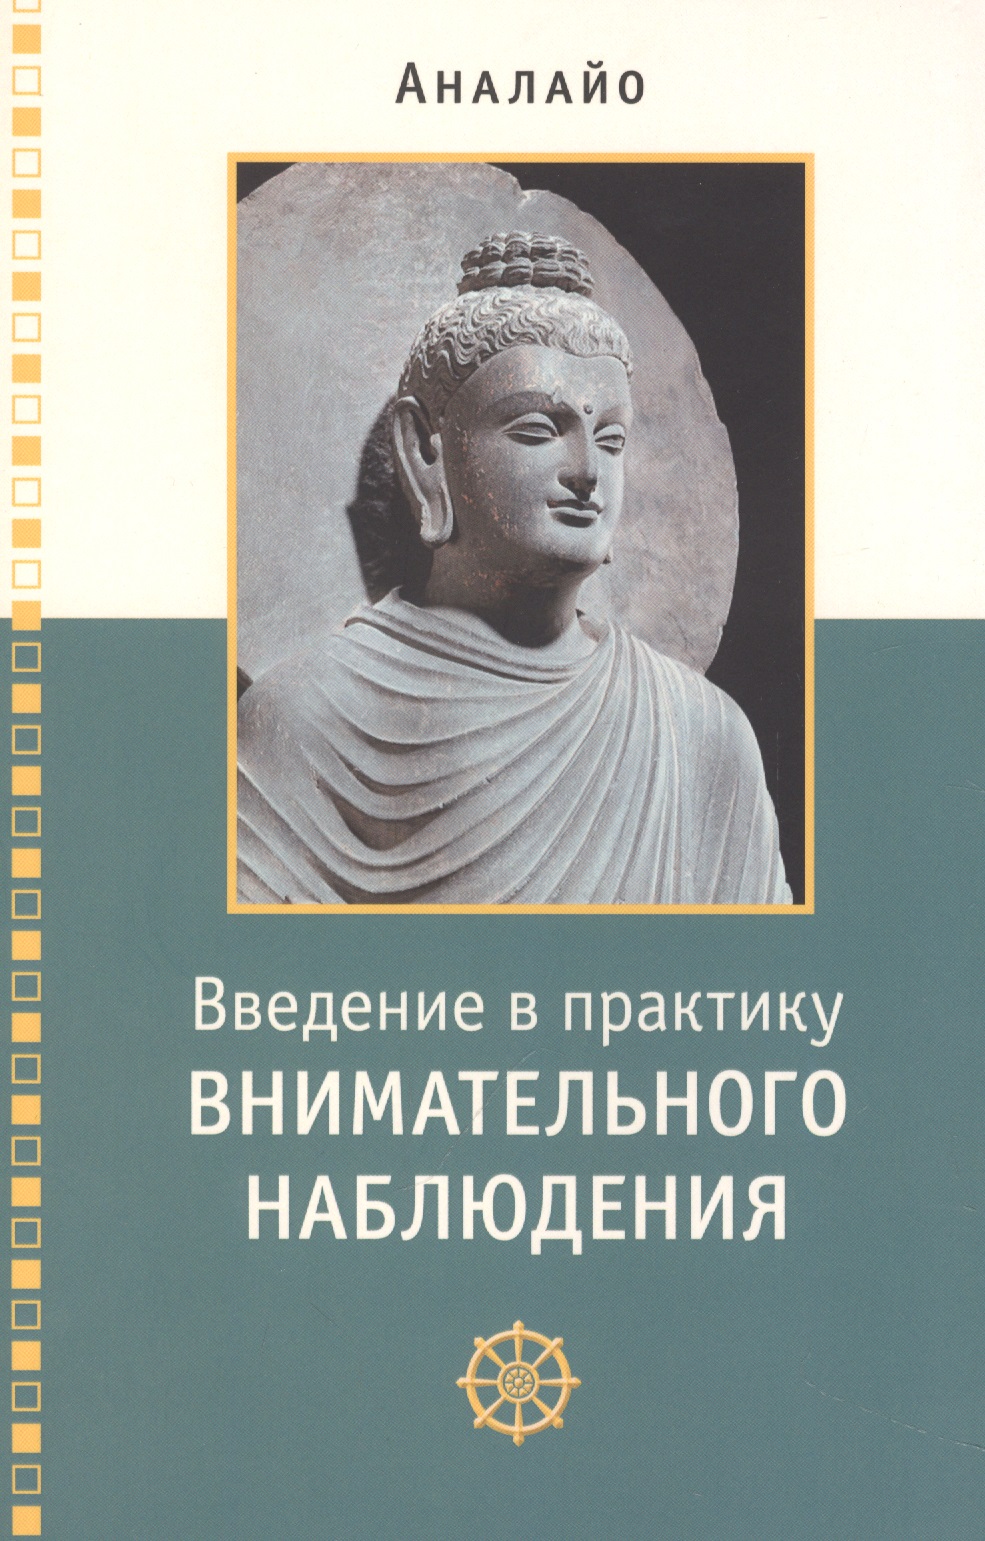 Аналайо Бхиккху Введение в практику внимательного наблюдения Буддийское обоснование и практические занятия медитация сатипаттхана практическое руководство аналайо бхикку